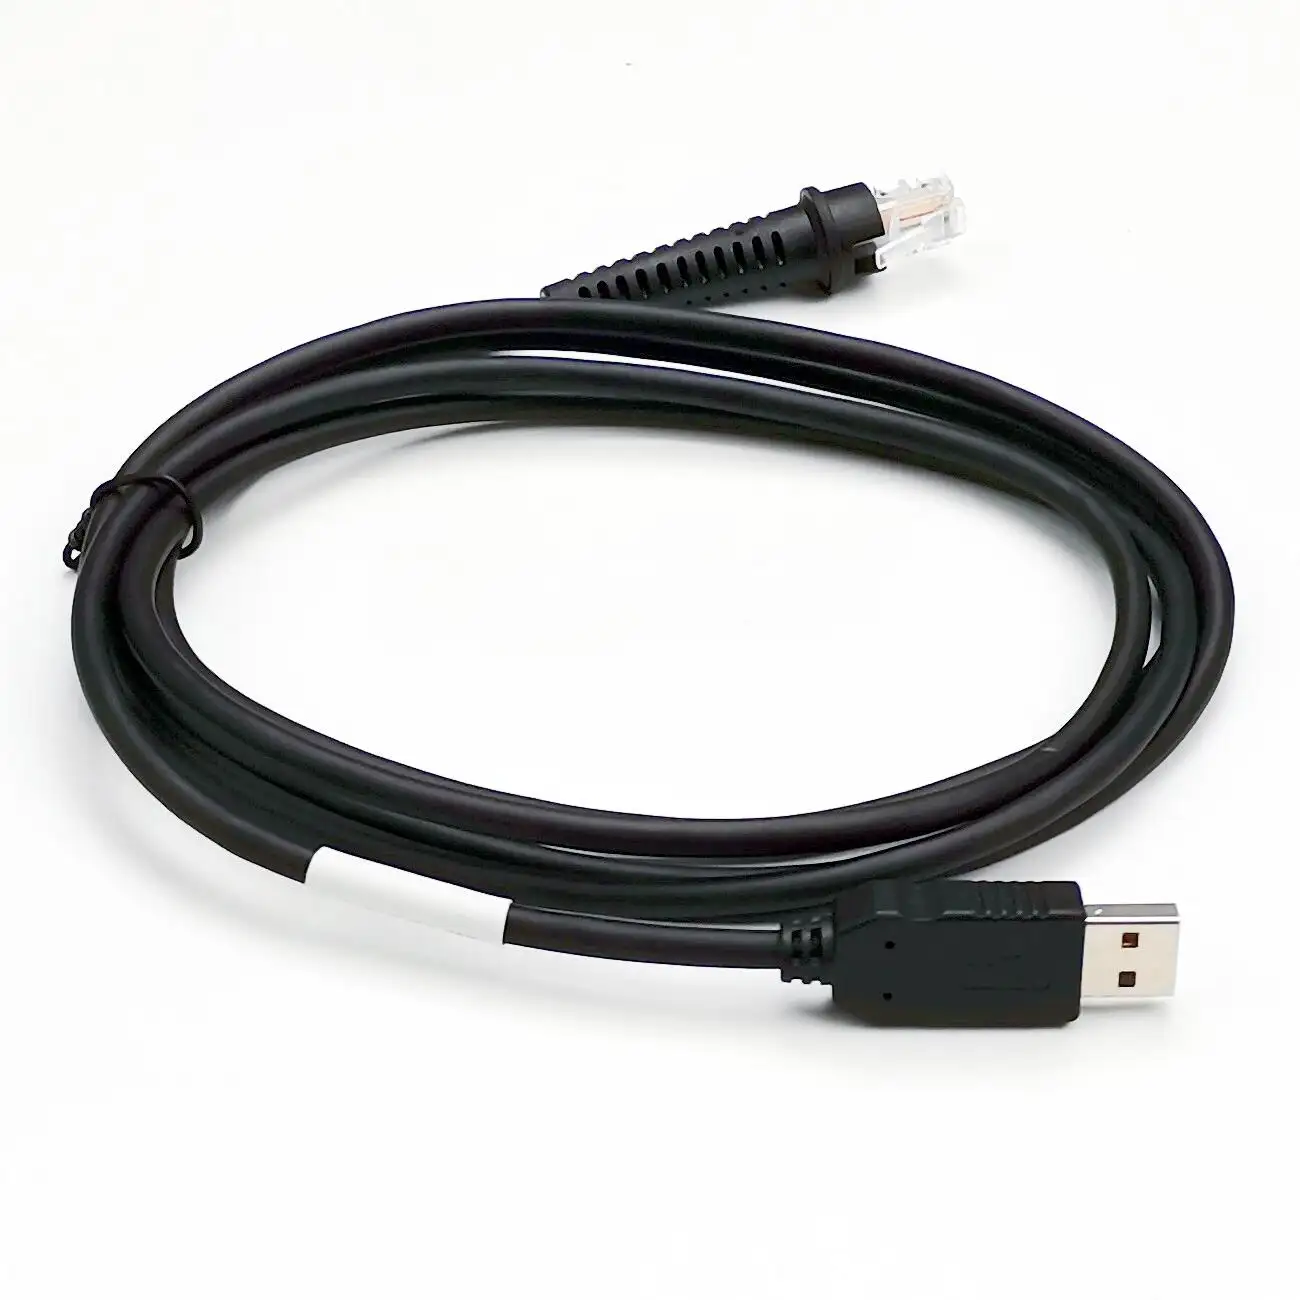 Кабель считывателя штрих-кода длиной 2 м для клиновой клавиатуры MS5145 MS7120 PS2 преобразуется в USB-кабель с чипом